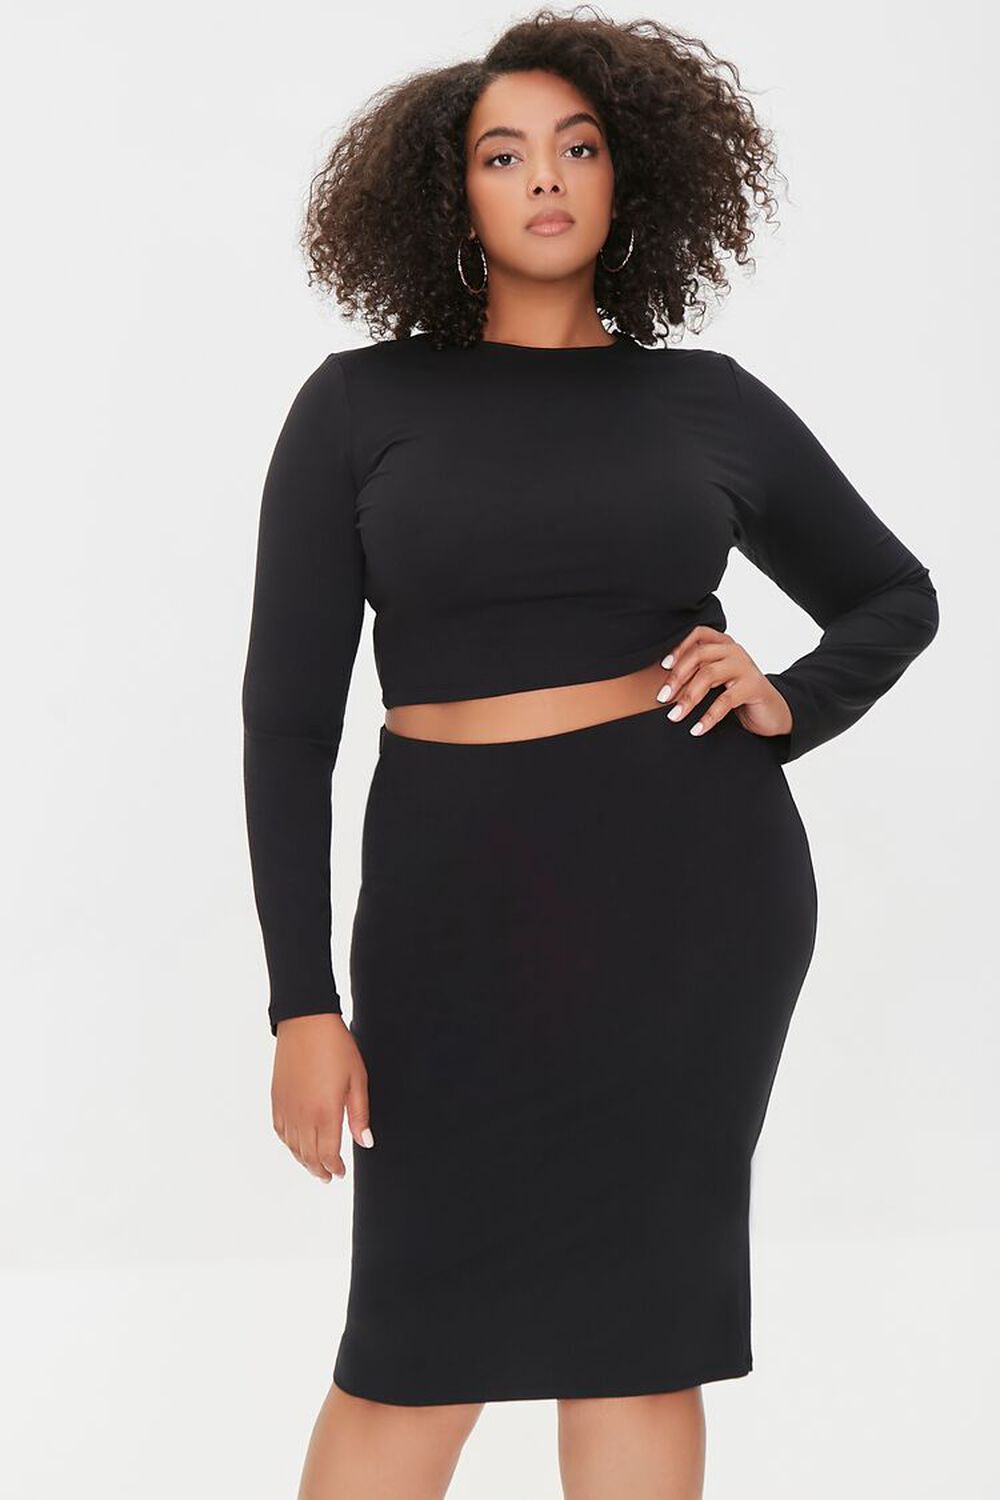 BLACK Plus Size Crop Top & Pencil Skirt Set, image 1